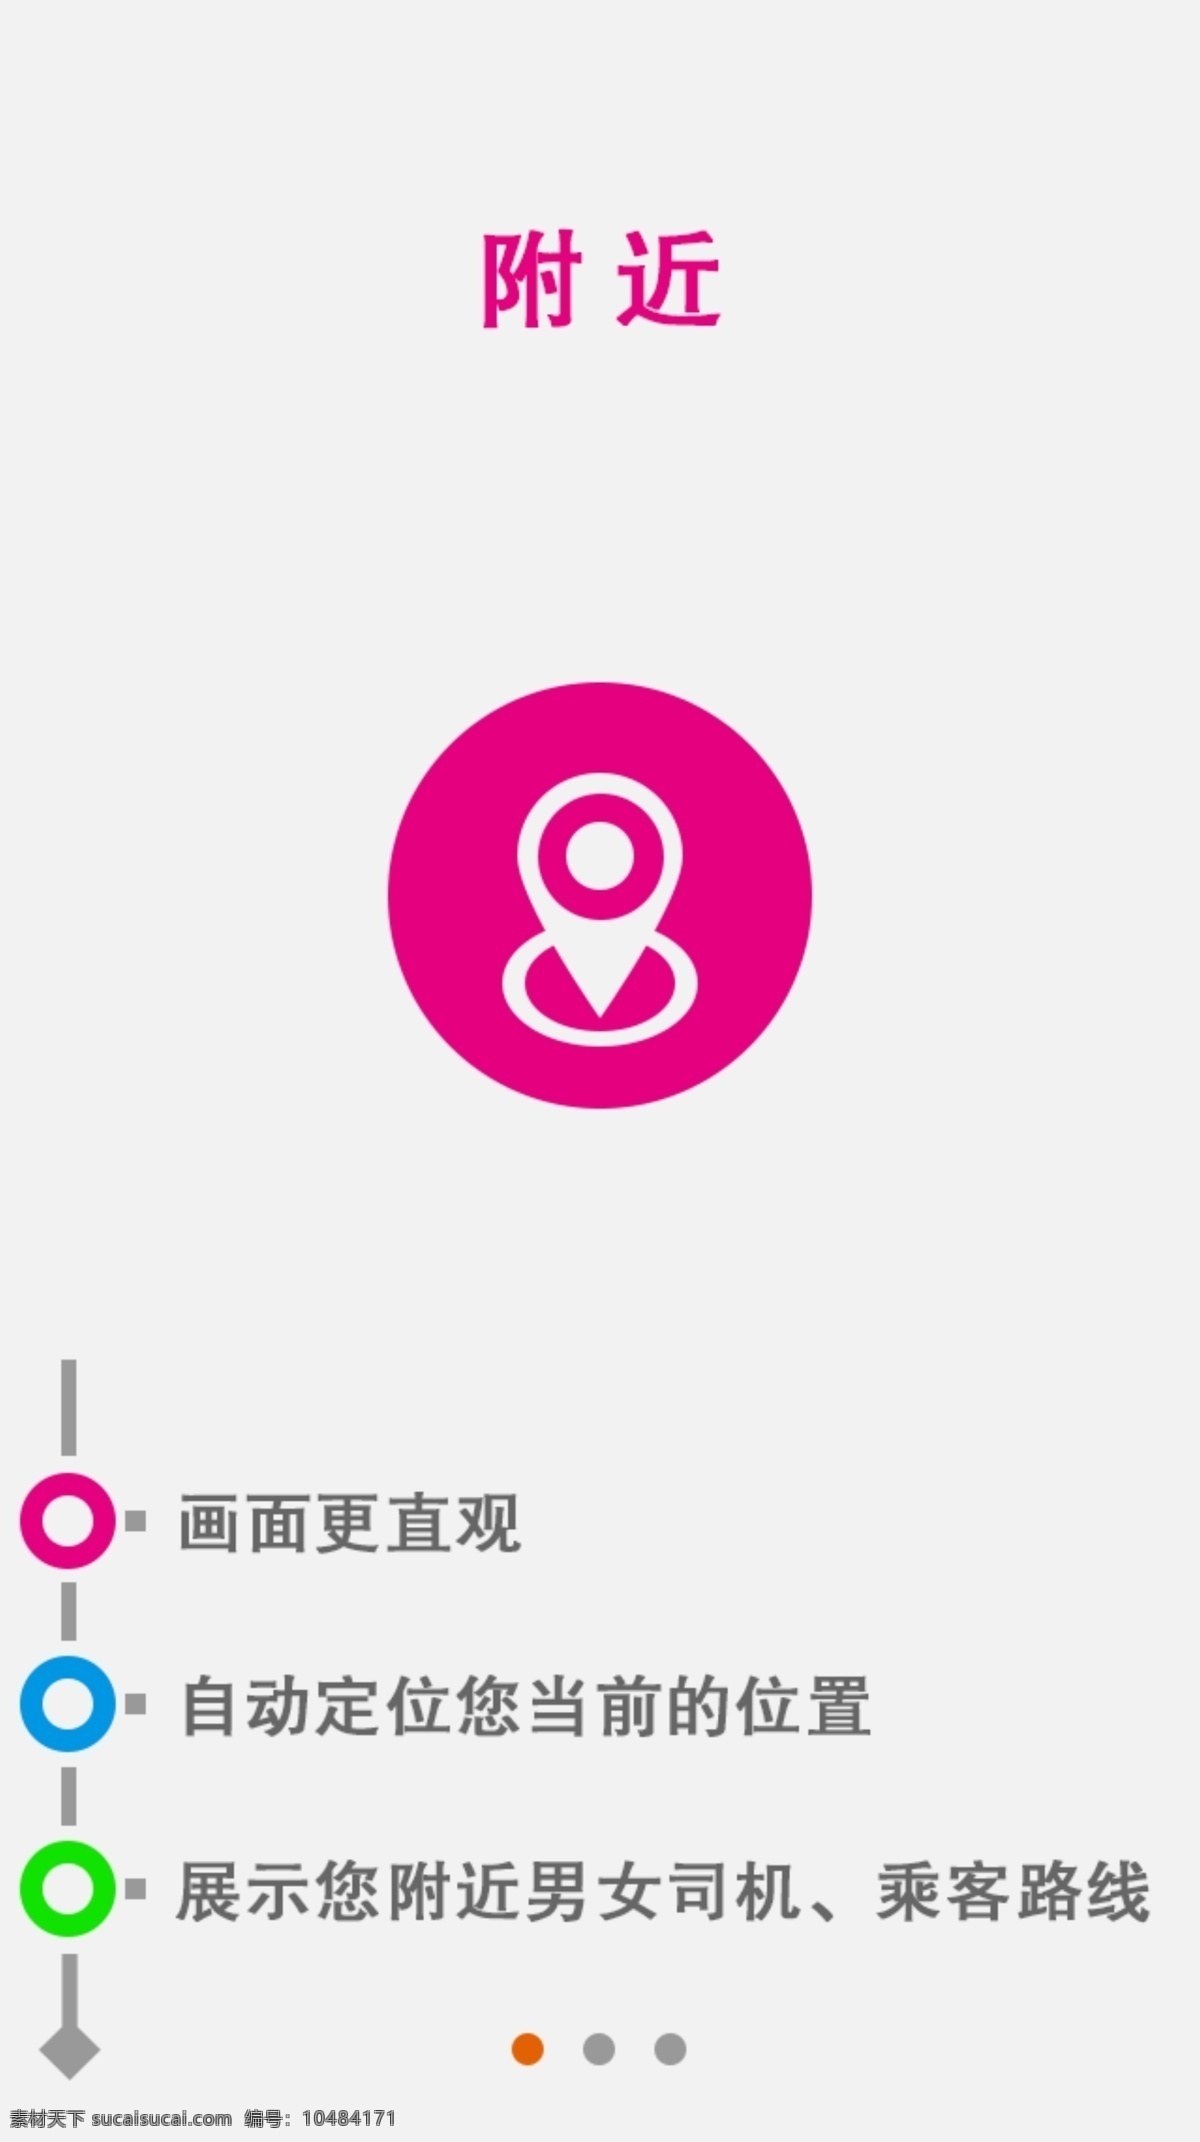 打车 软件 app 开启 界面 icon ui 租车 ui设计 界面设计